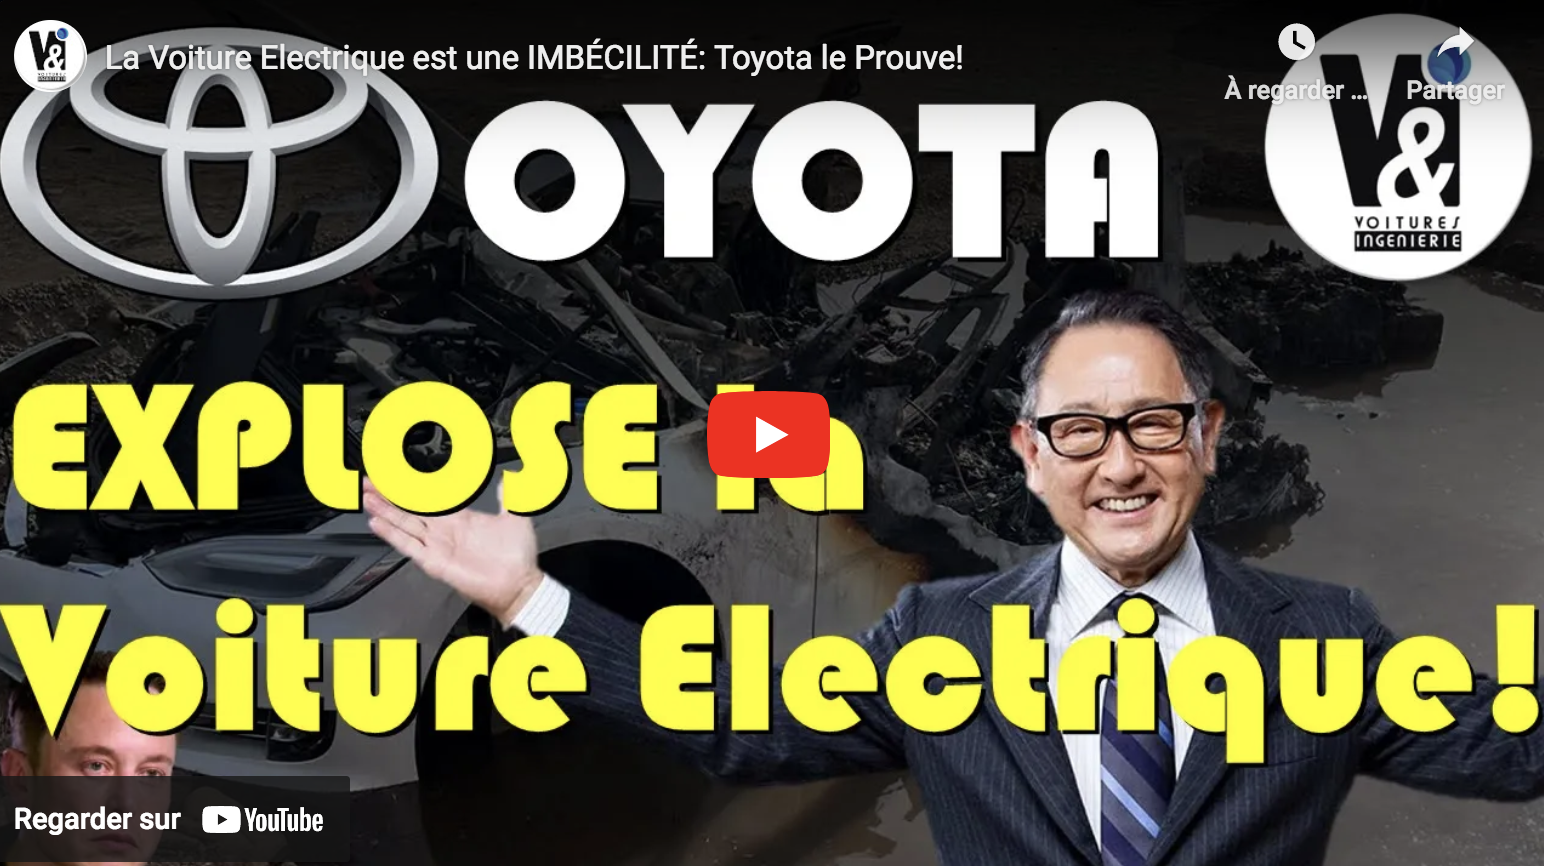 La voiture électrique est une imbécilité : Toyota le prouve (VIDÉO)